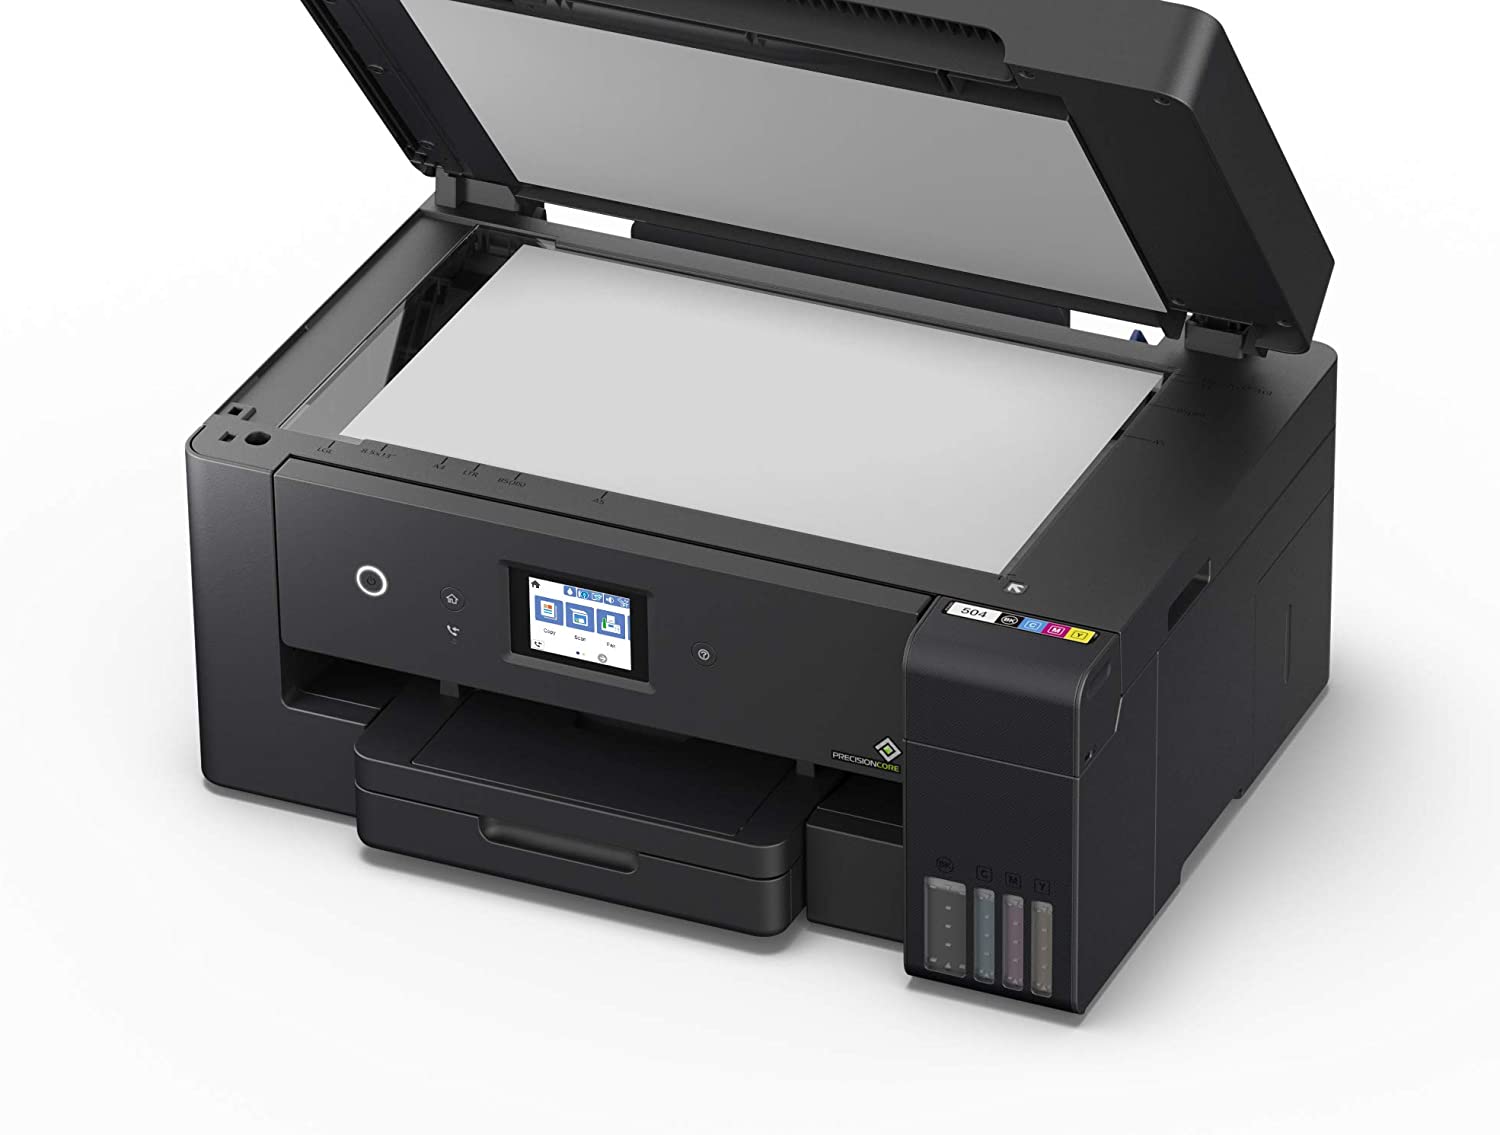 Epson EcoTank ET-15000 A3 Print Scan Copy Wi-Fi Printer, Black